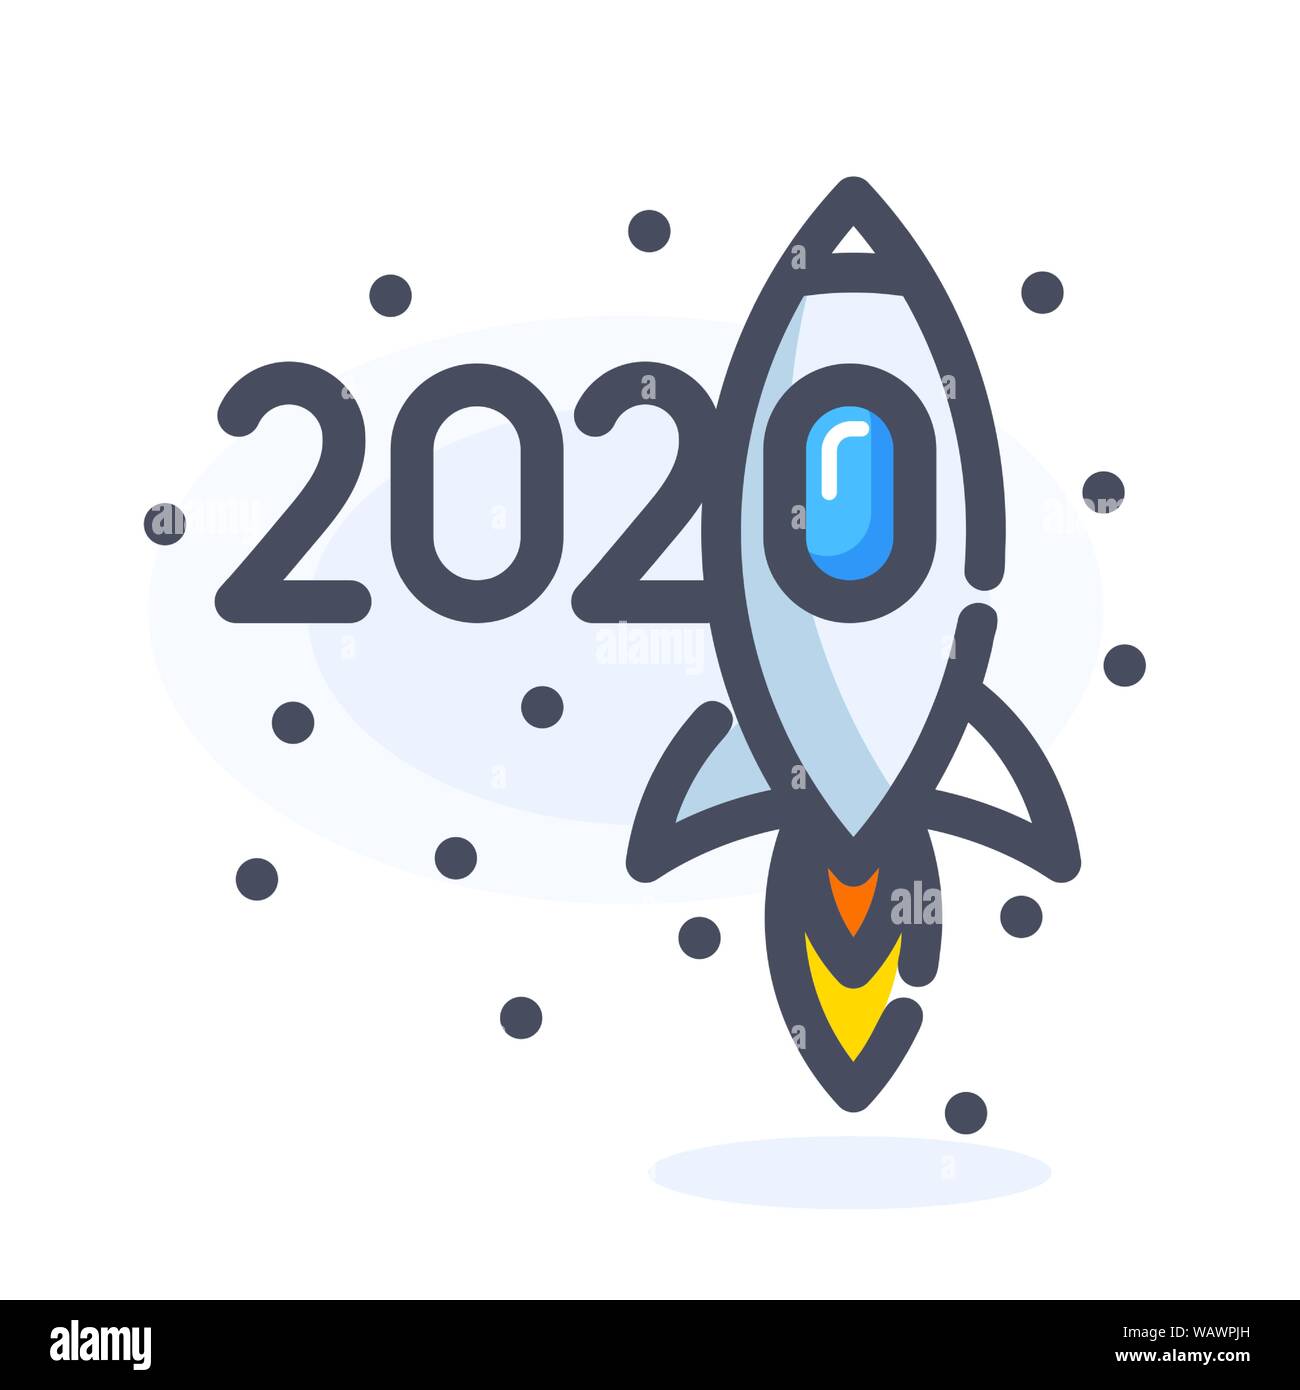 2020, neues Jahr zahlen cartoon Design mit Fliegen im Raum oder in den Himmel Rakete unter den Sternen oder Schneeflocken. Isolierte Vector Illustration. Stock Vektor